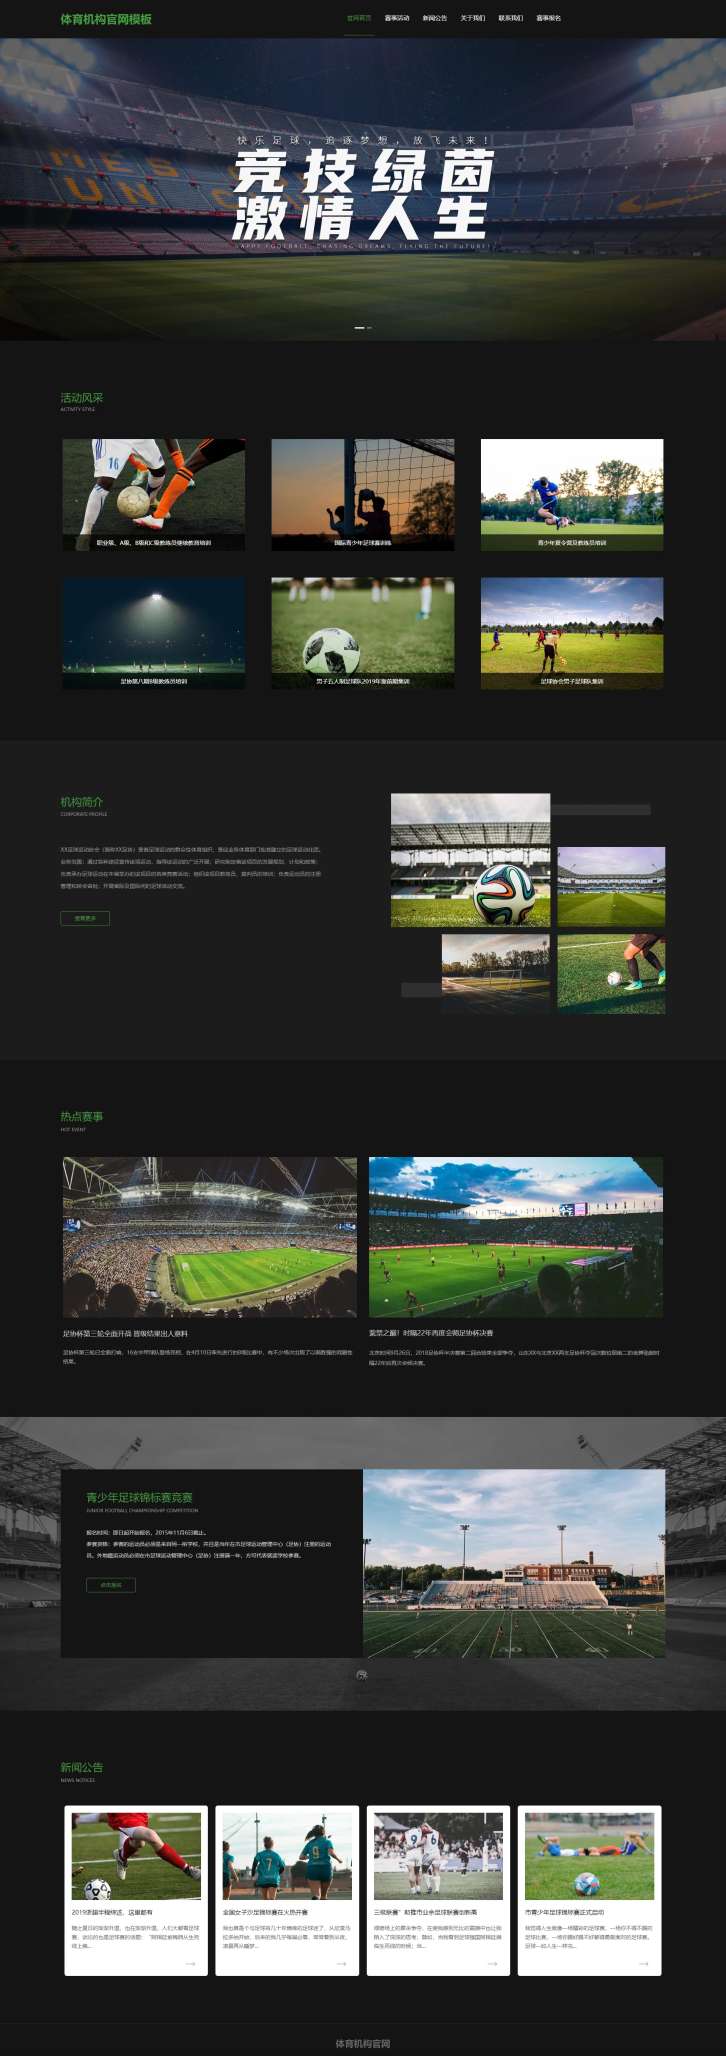 优选足球体育机构网站模板[演示]